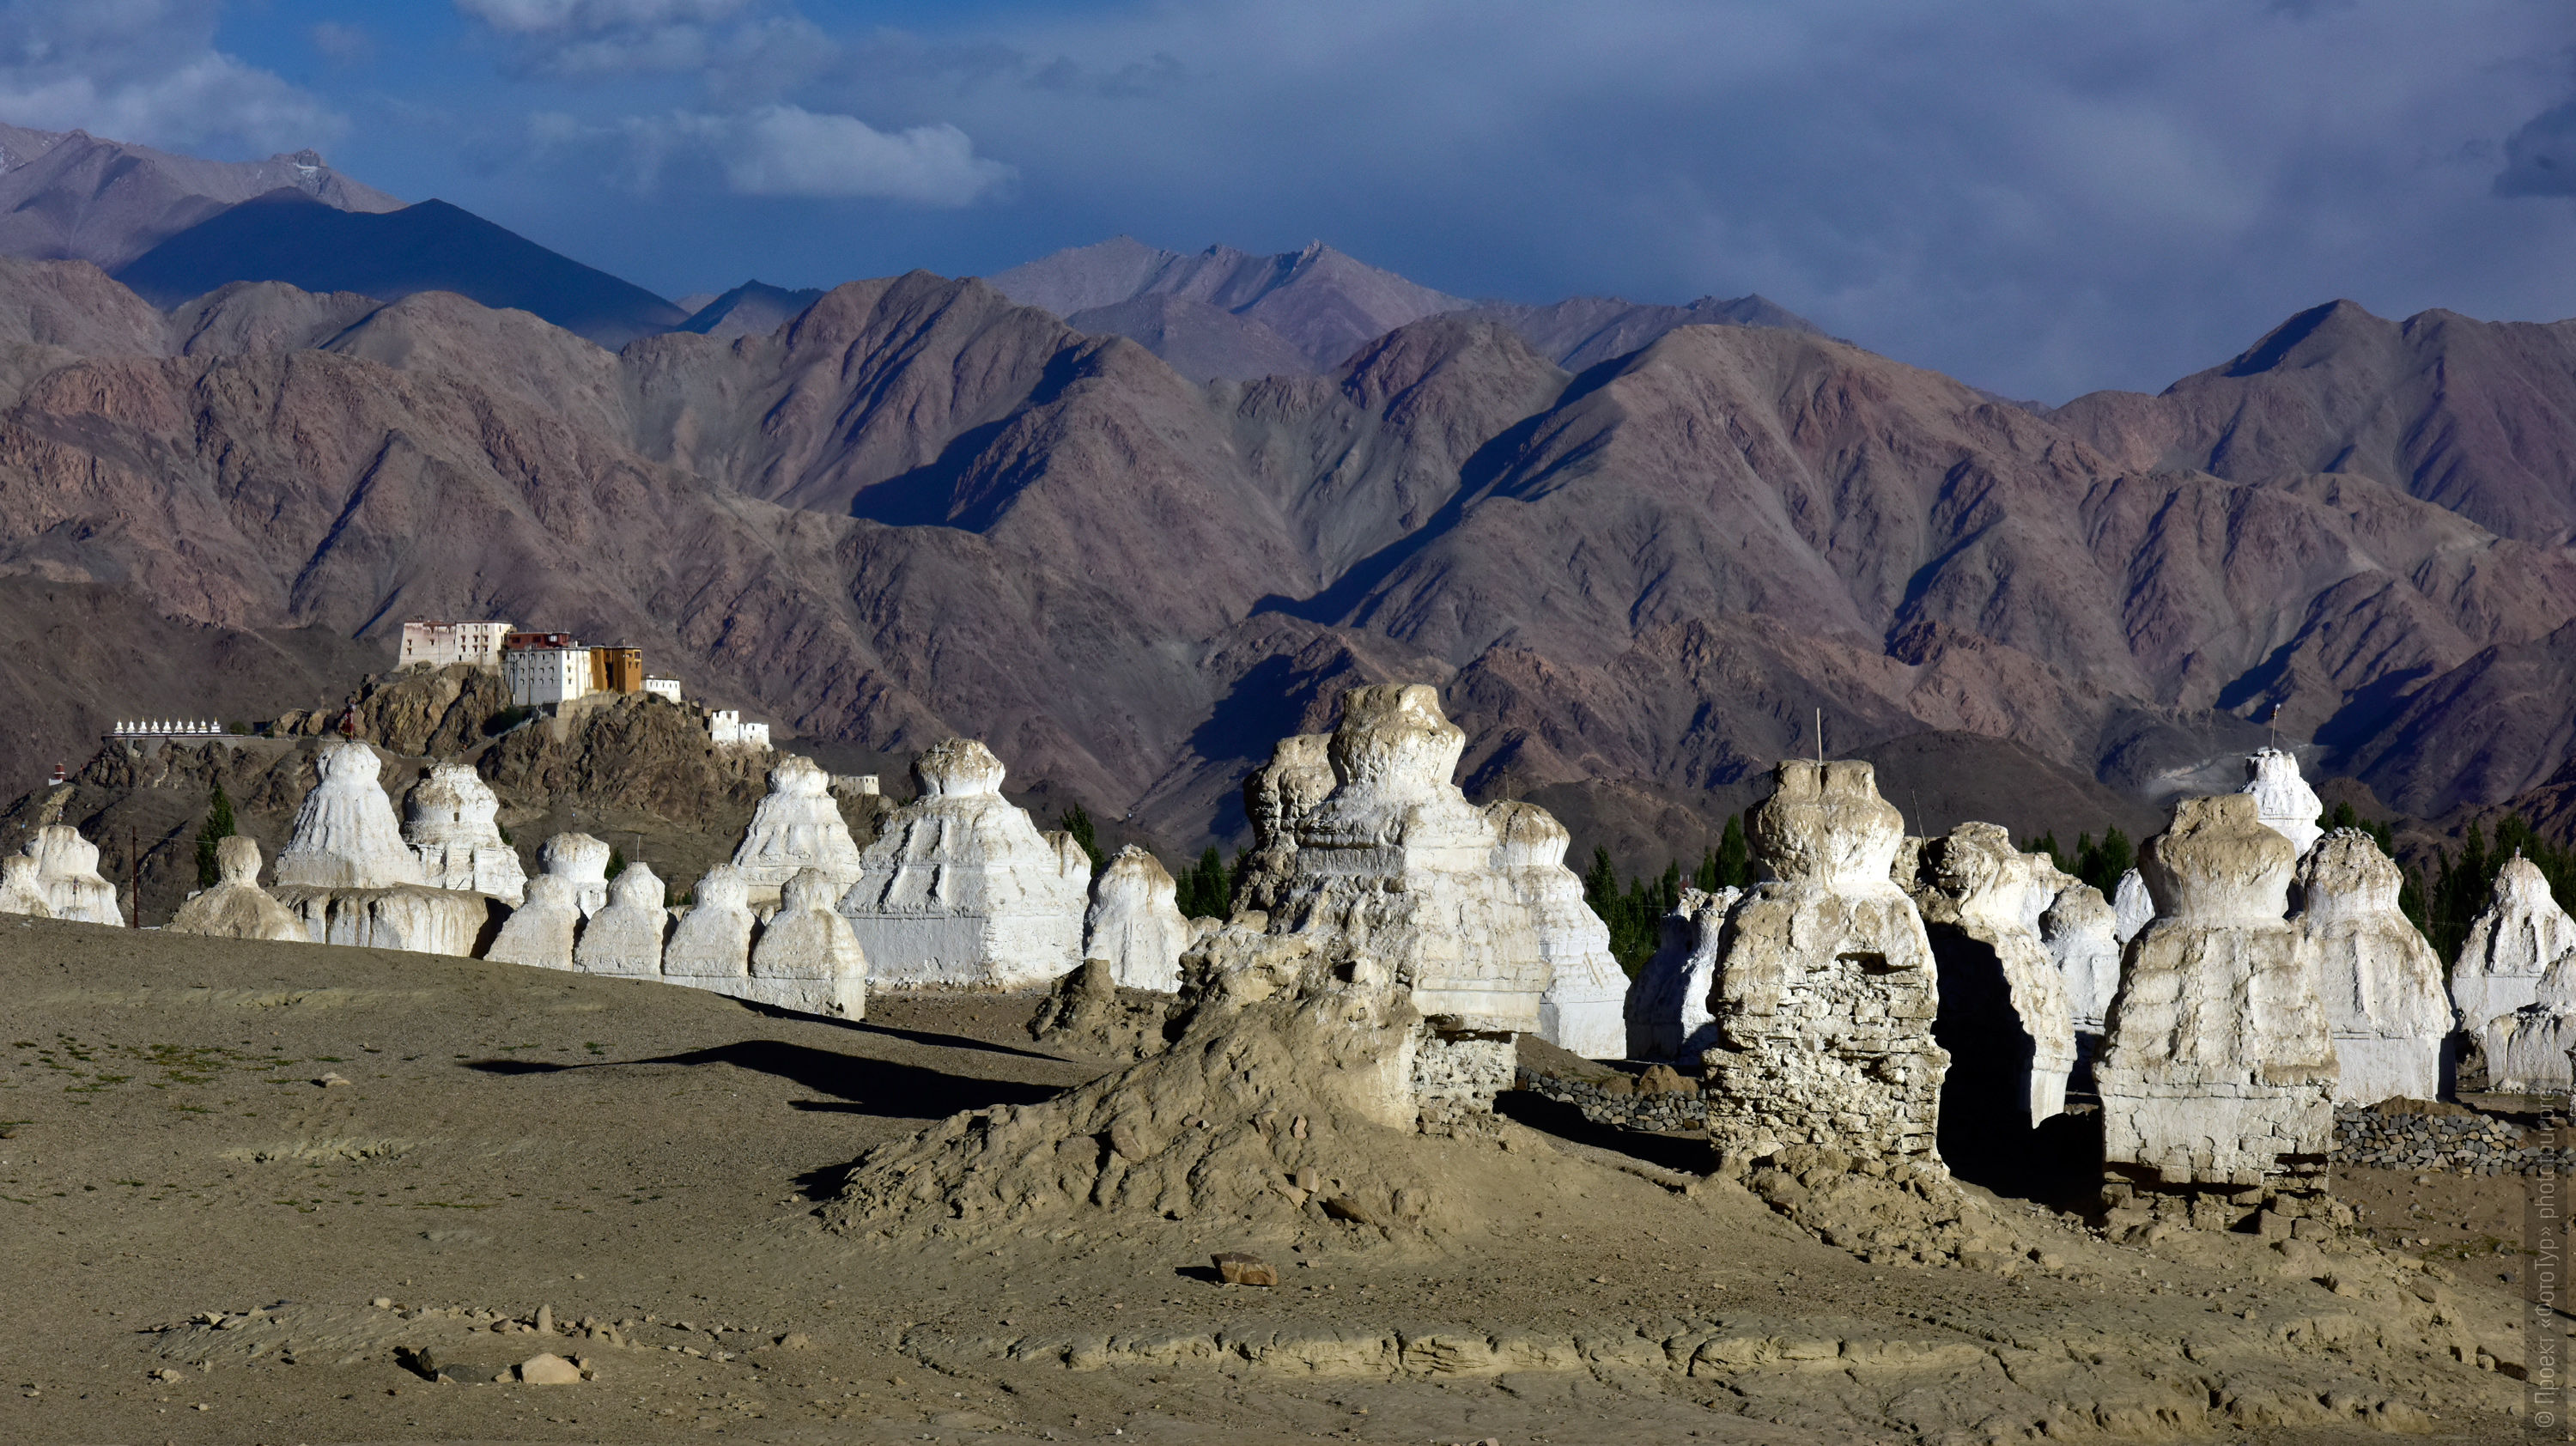 White stupas of Europe and the Tiksi Gonpa monastery, Ladakh women’s tour, August 31 - September 14, 2019.